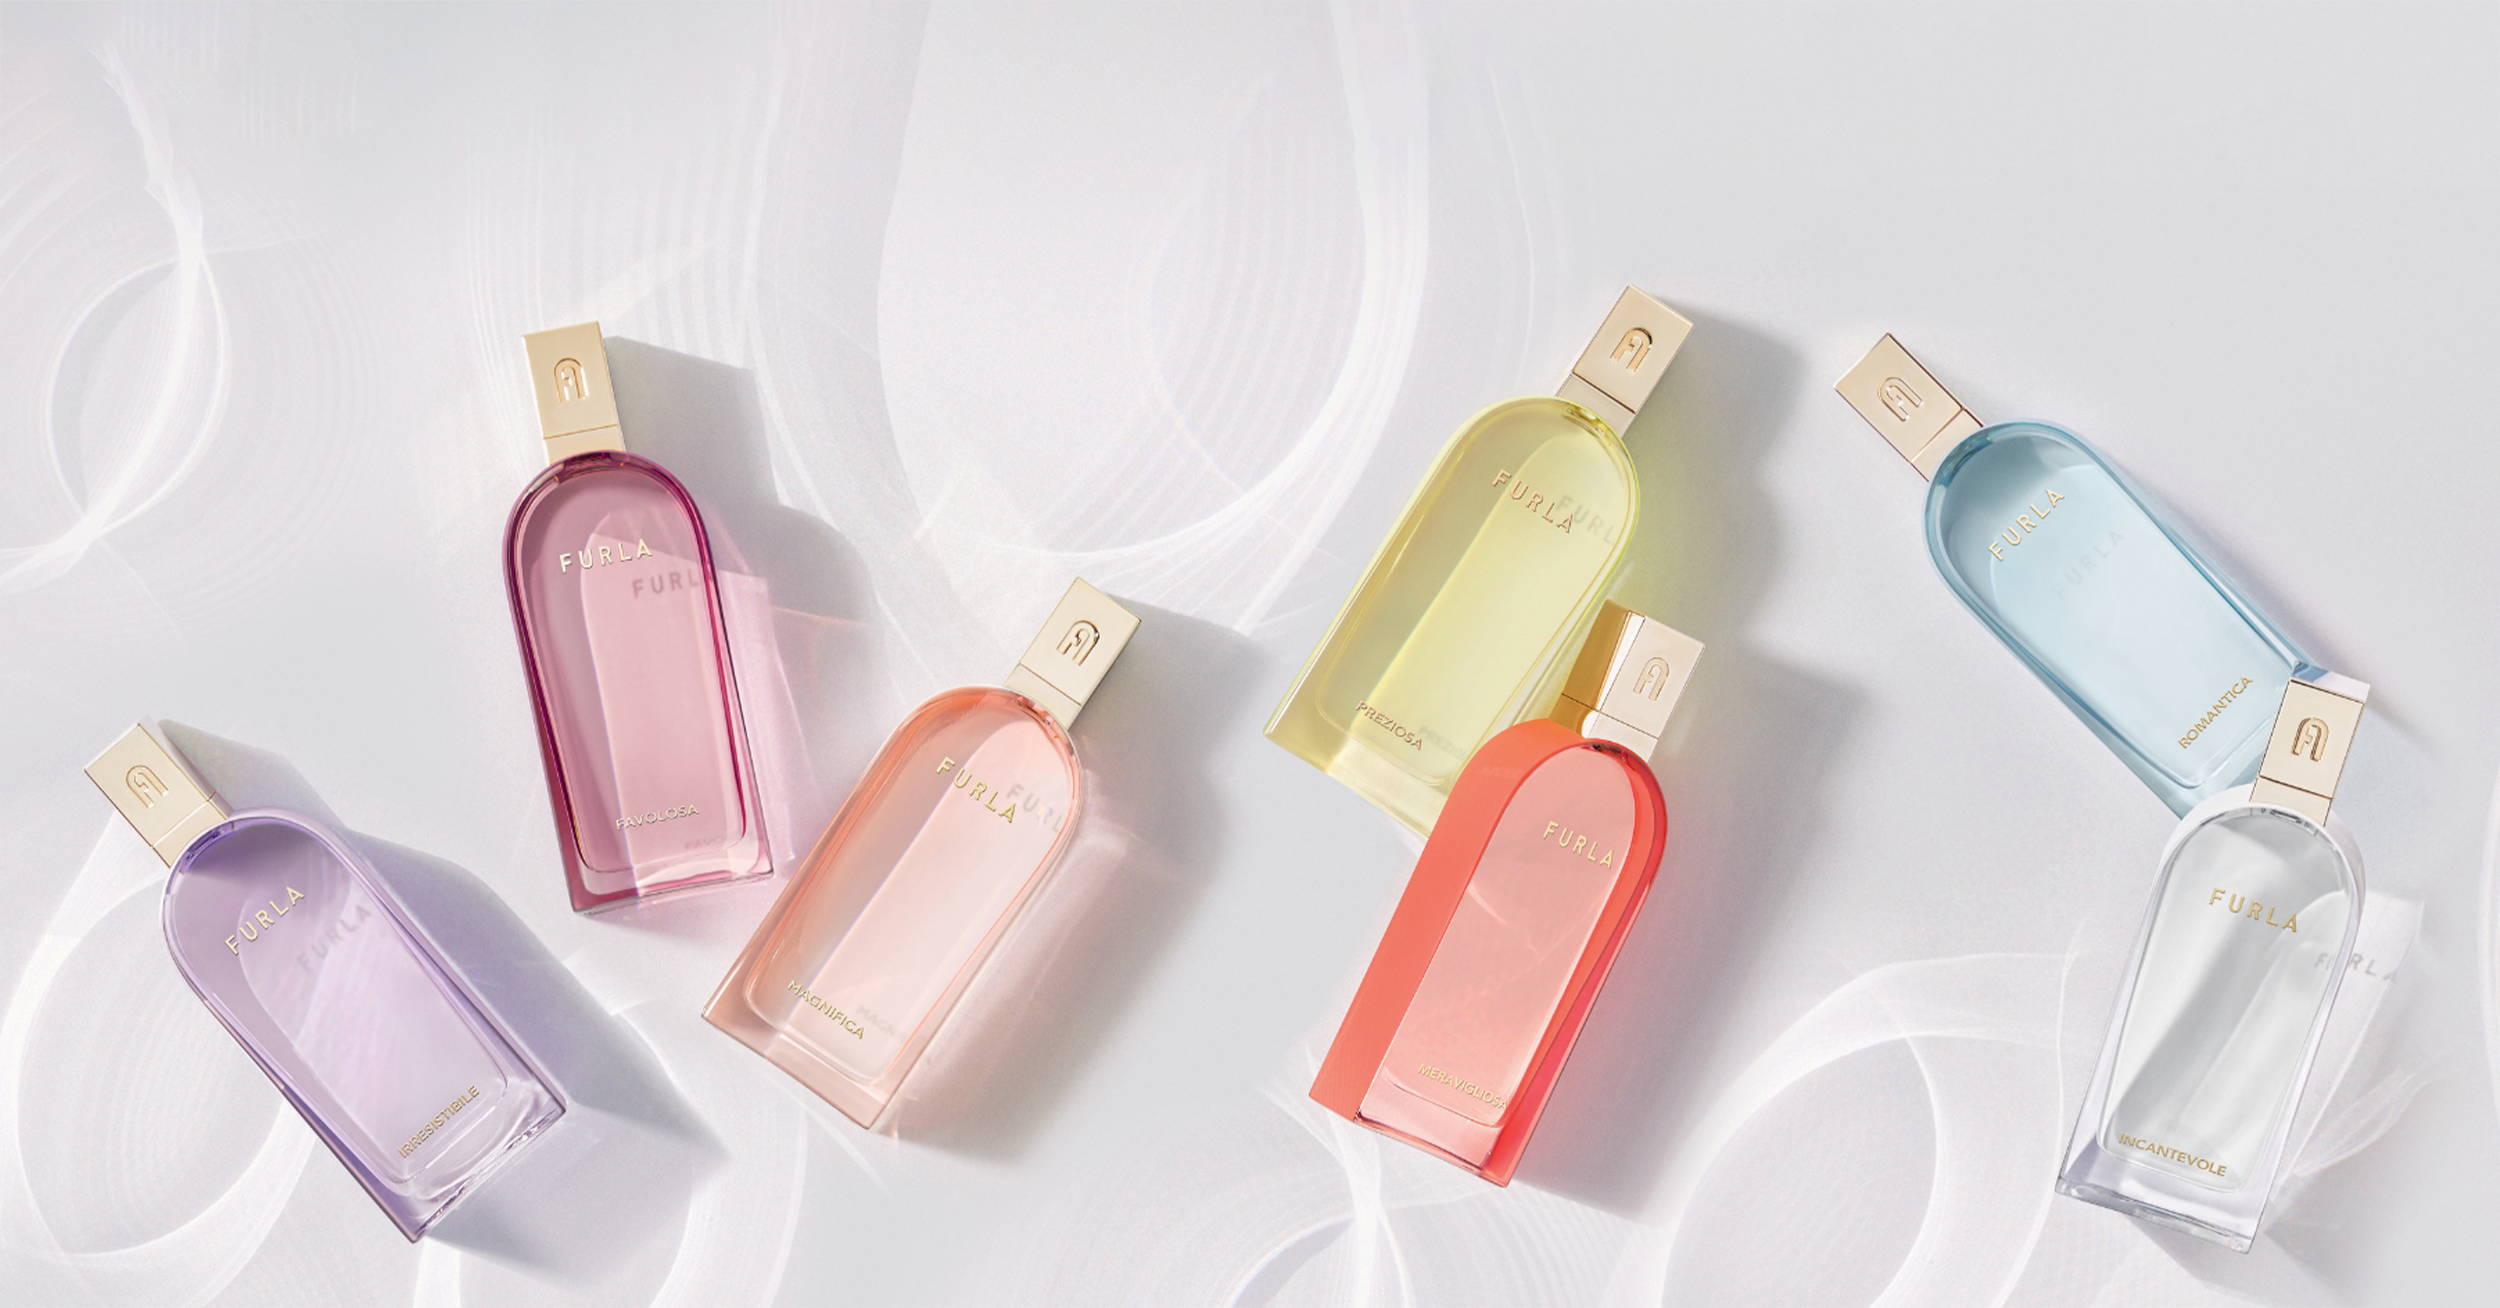 Furla Fragrances: Art and Beauty in a Bottle